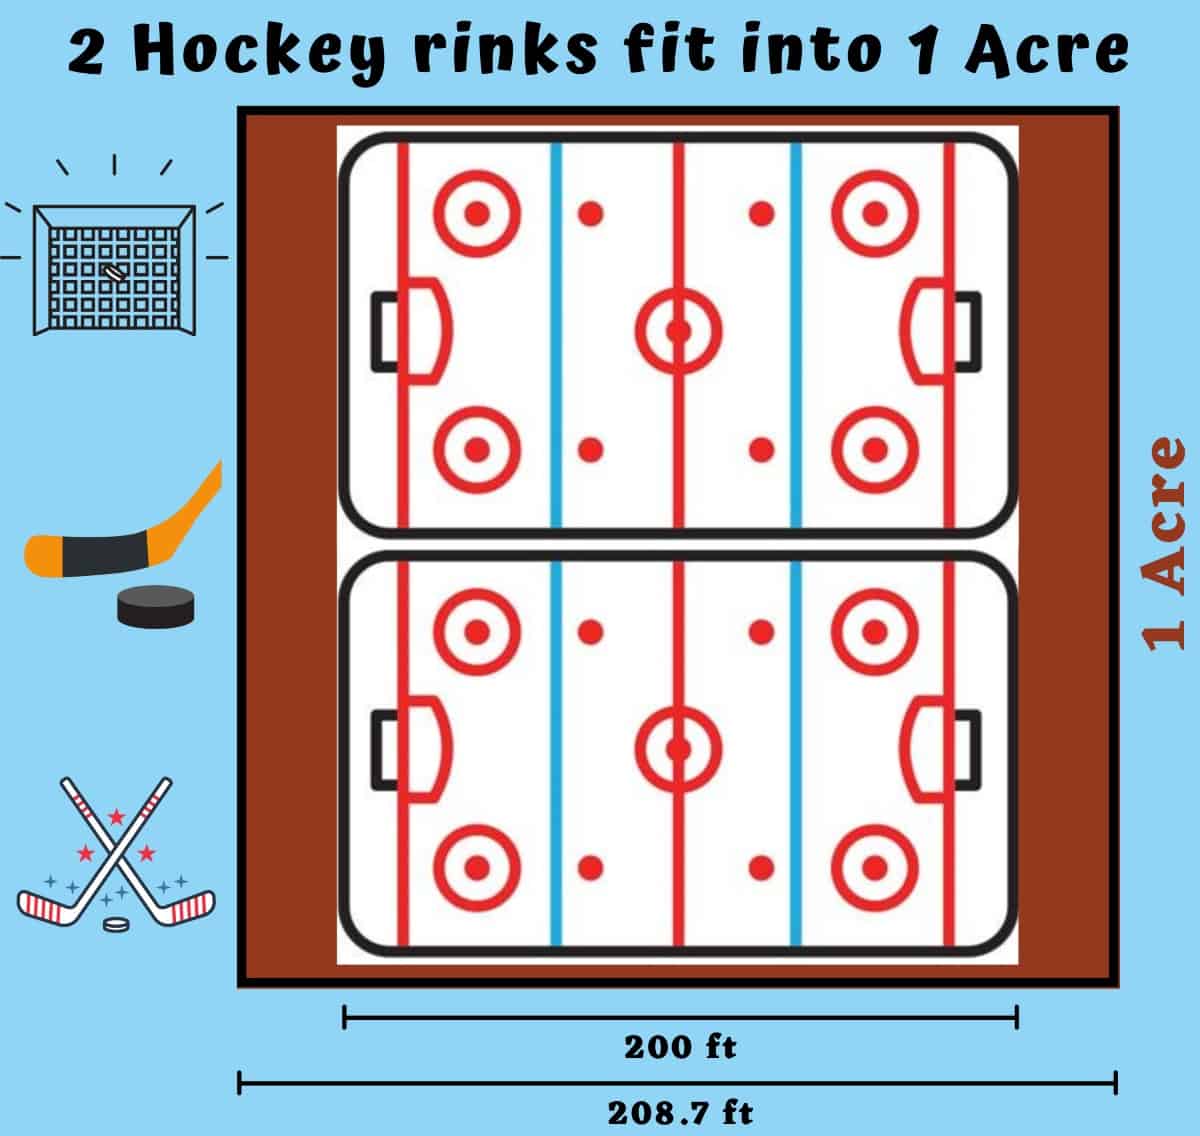  hur stor är en Acre-ishockey